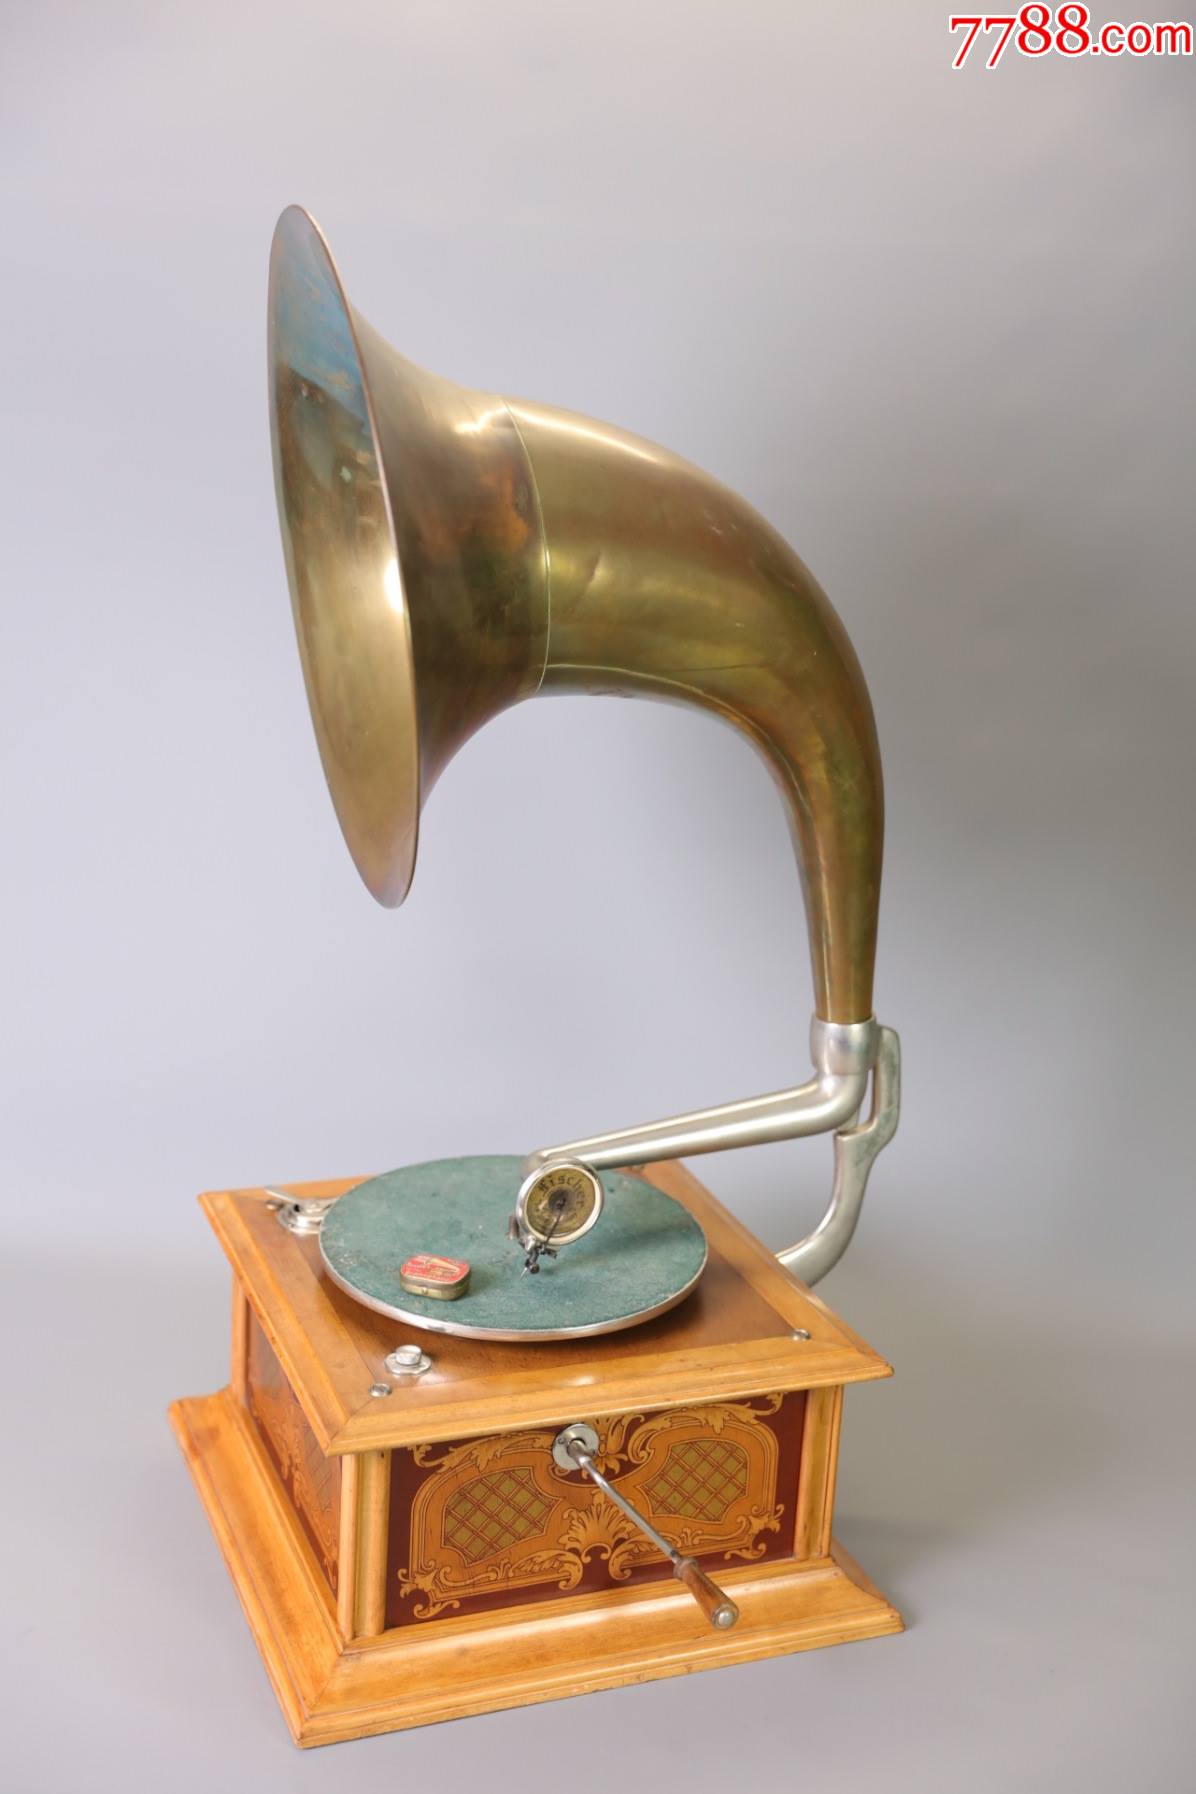 上世纪初瑞士全铜大喇叭古董机械手摇留声机老唱机单机芯驱动